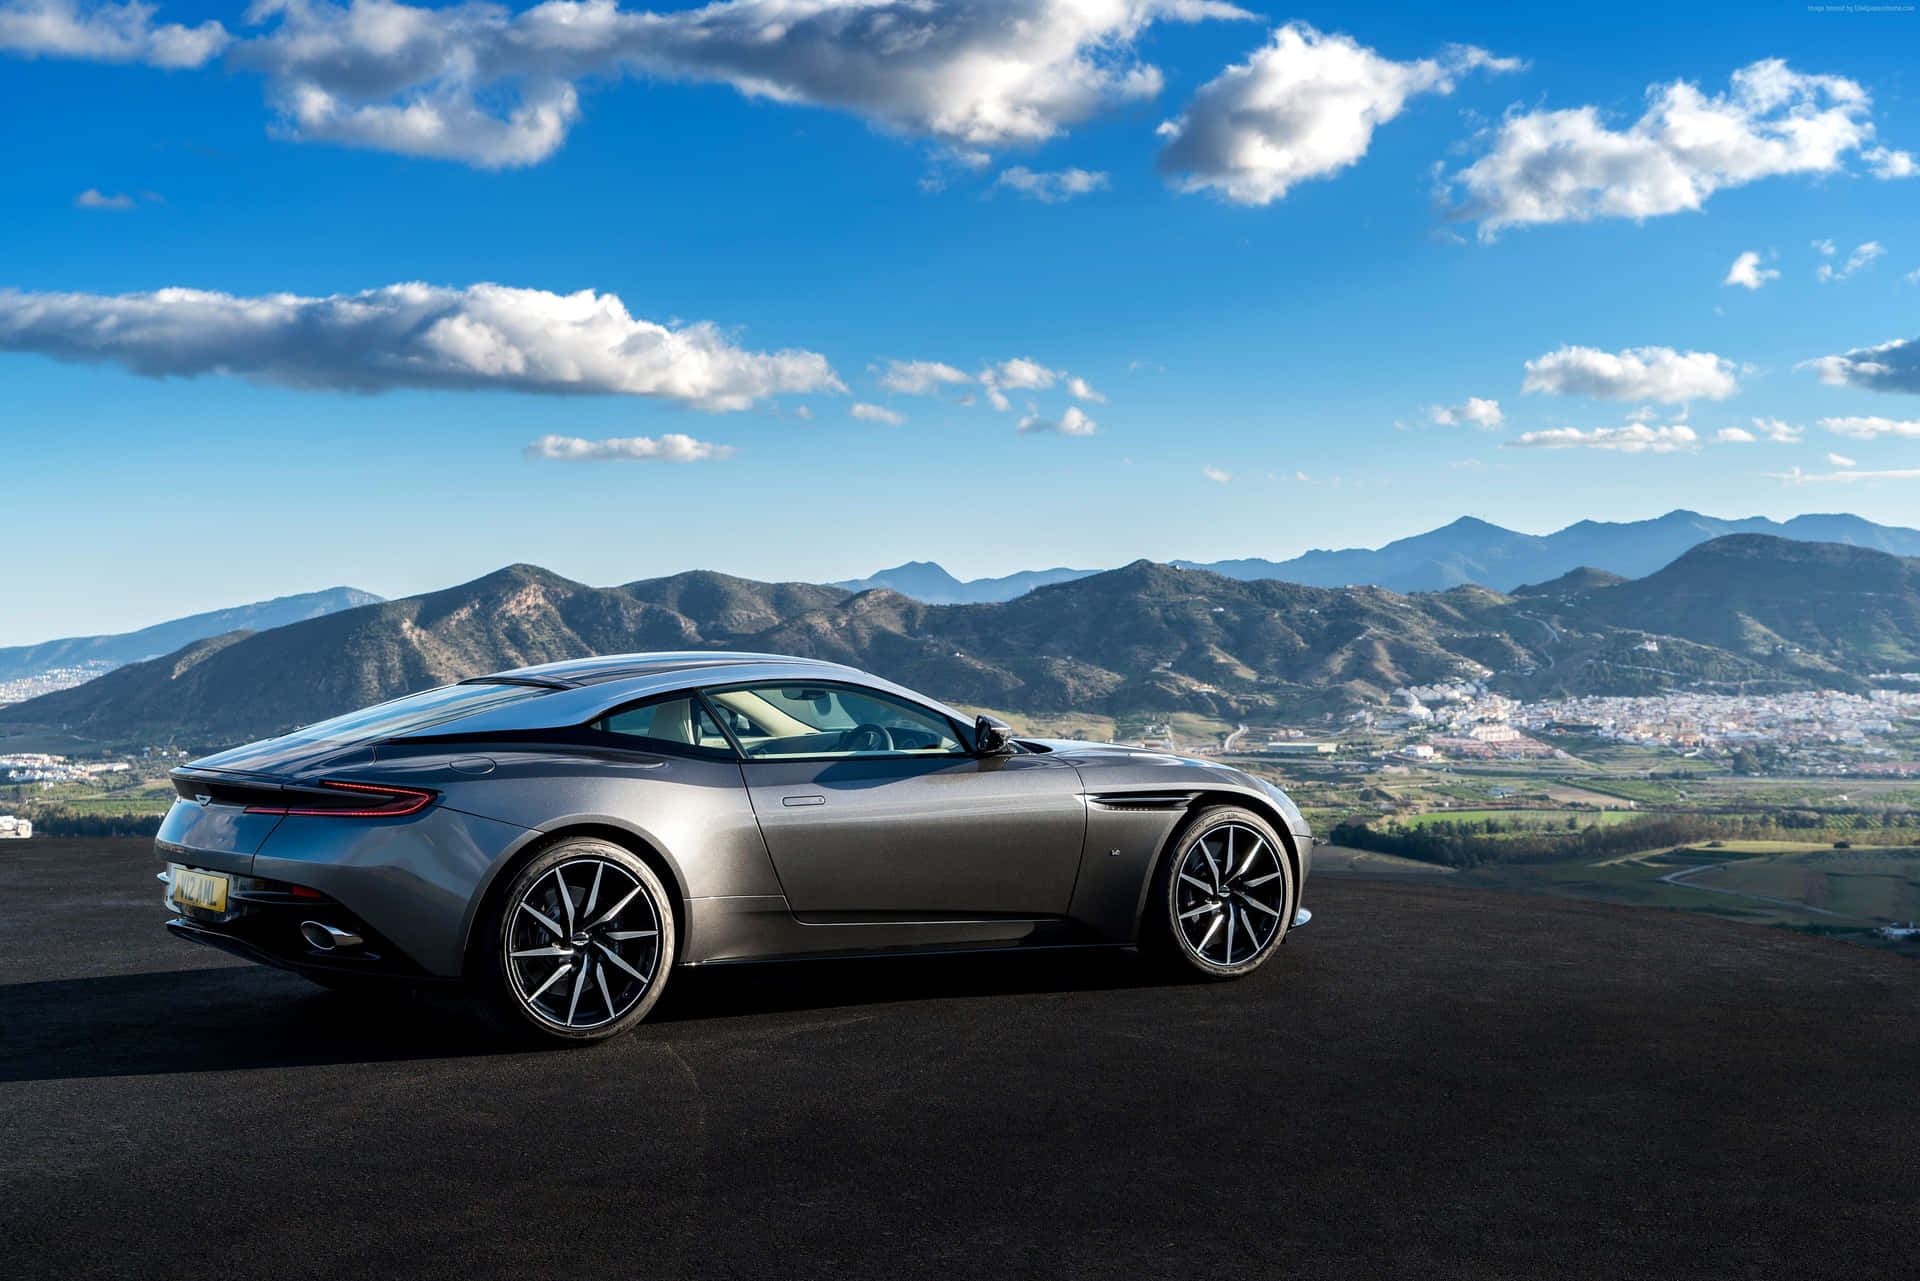 Fondode Pantalla: Aston Martin Db11 Con Estilo: Un Rendimiento Sofisticado Se Encuentra Con Una Elegancia Sin Igual. Fondo de pantalla